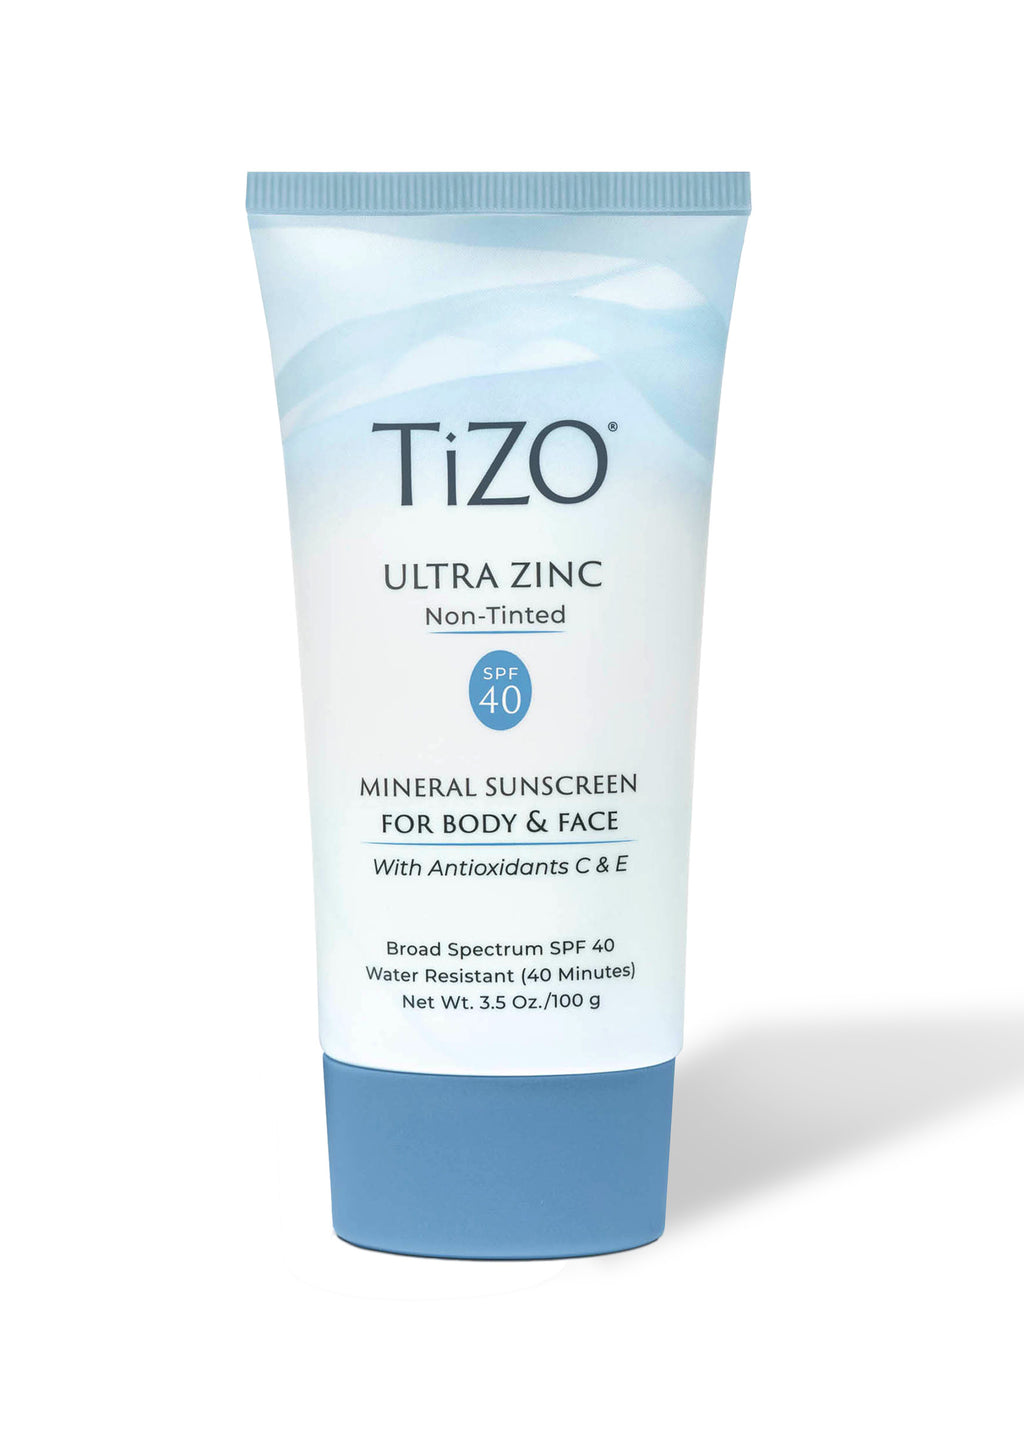 TiZO ultra zinc non-tinted